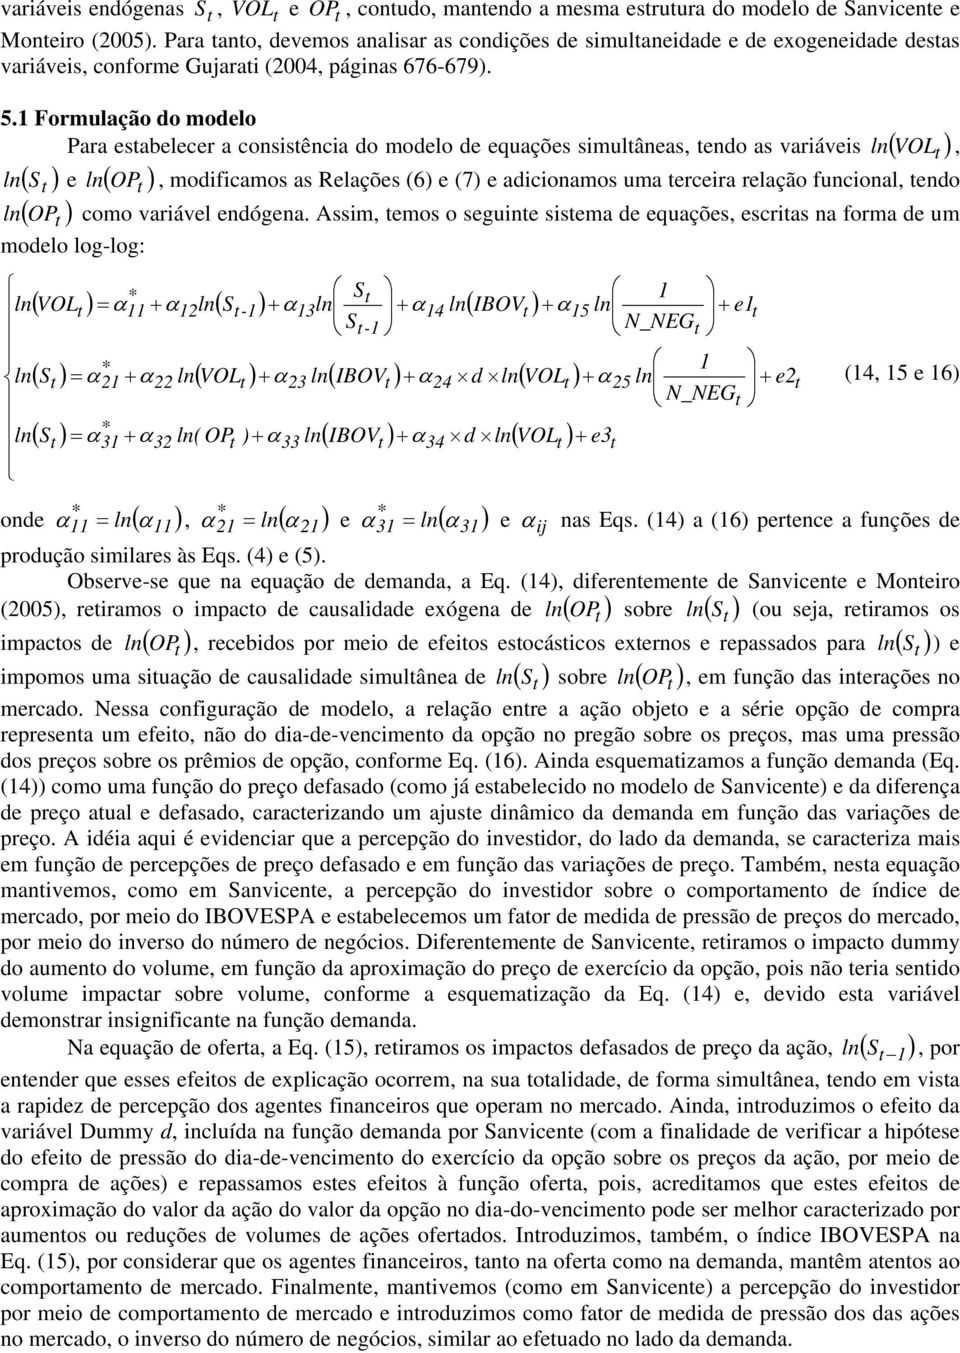 1 Formulação do modelo Para esabelecer a consisência do modelo de equações simulâneas, endo as variáveis ln ( VOL, ln ( S e ln ( OP, modificamos as Relações (6 e (7 e adicionamos uma erceira relação